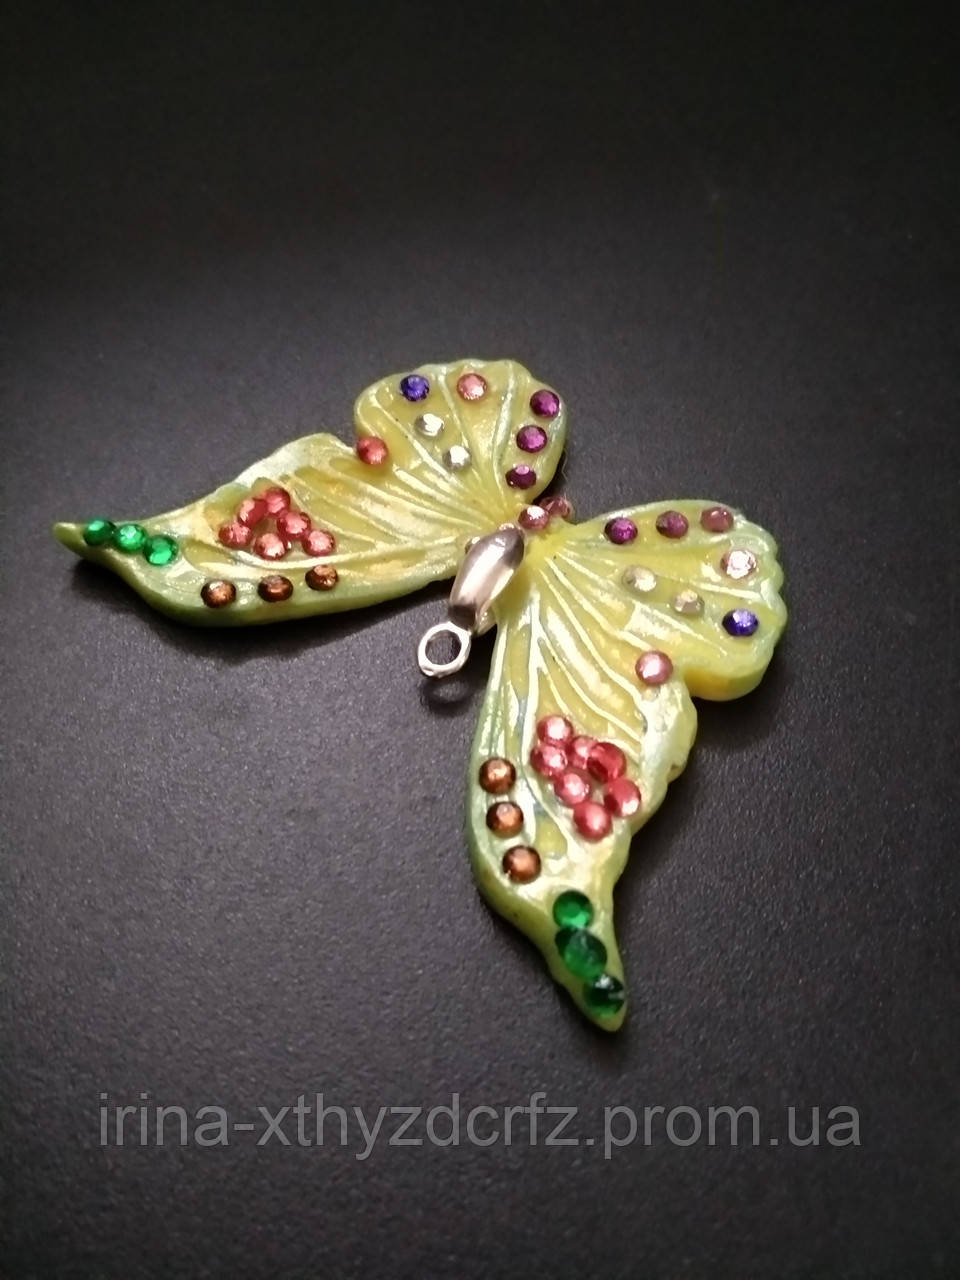 Кулон різнобарвний метелик із полімерної глини для дівчини, фото 1